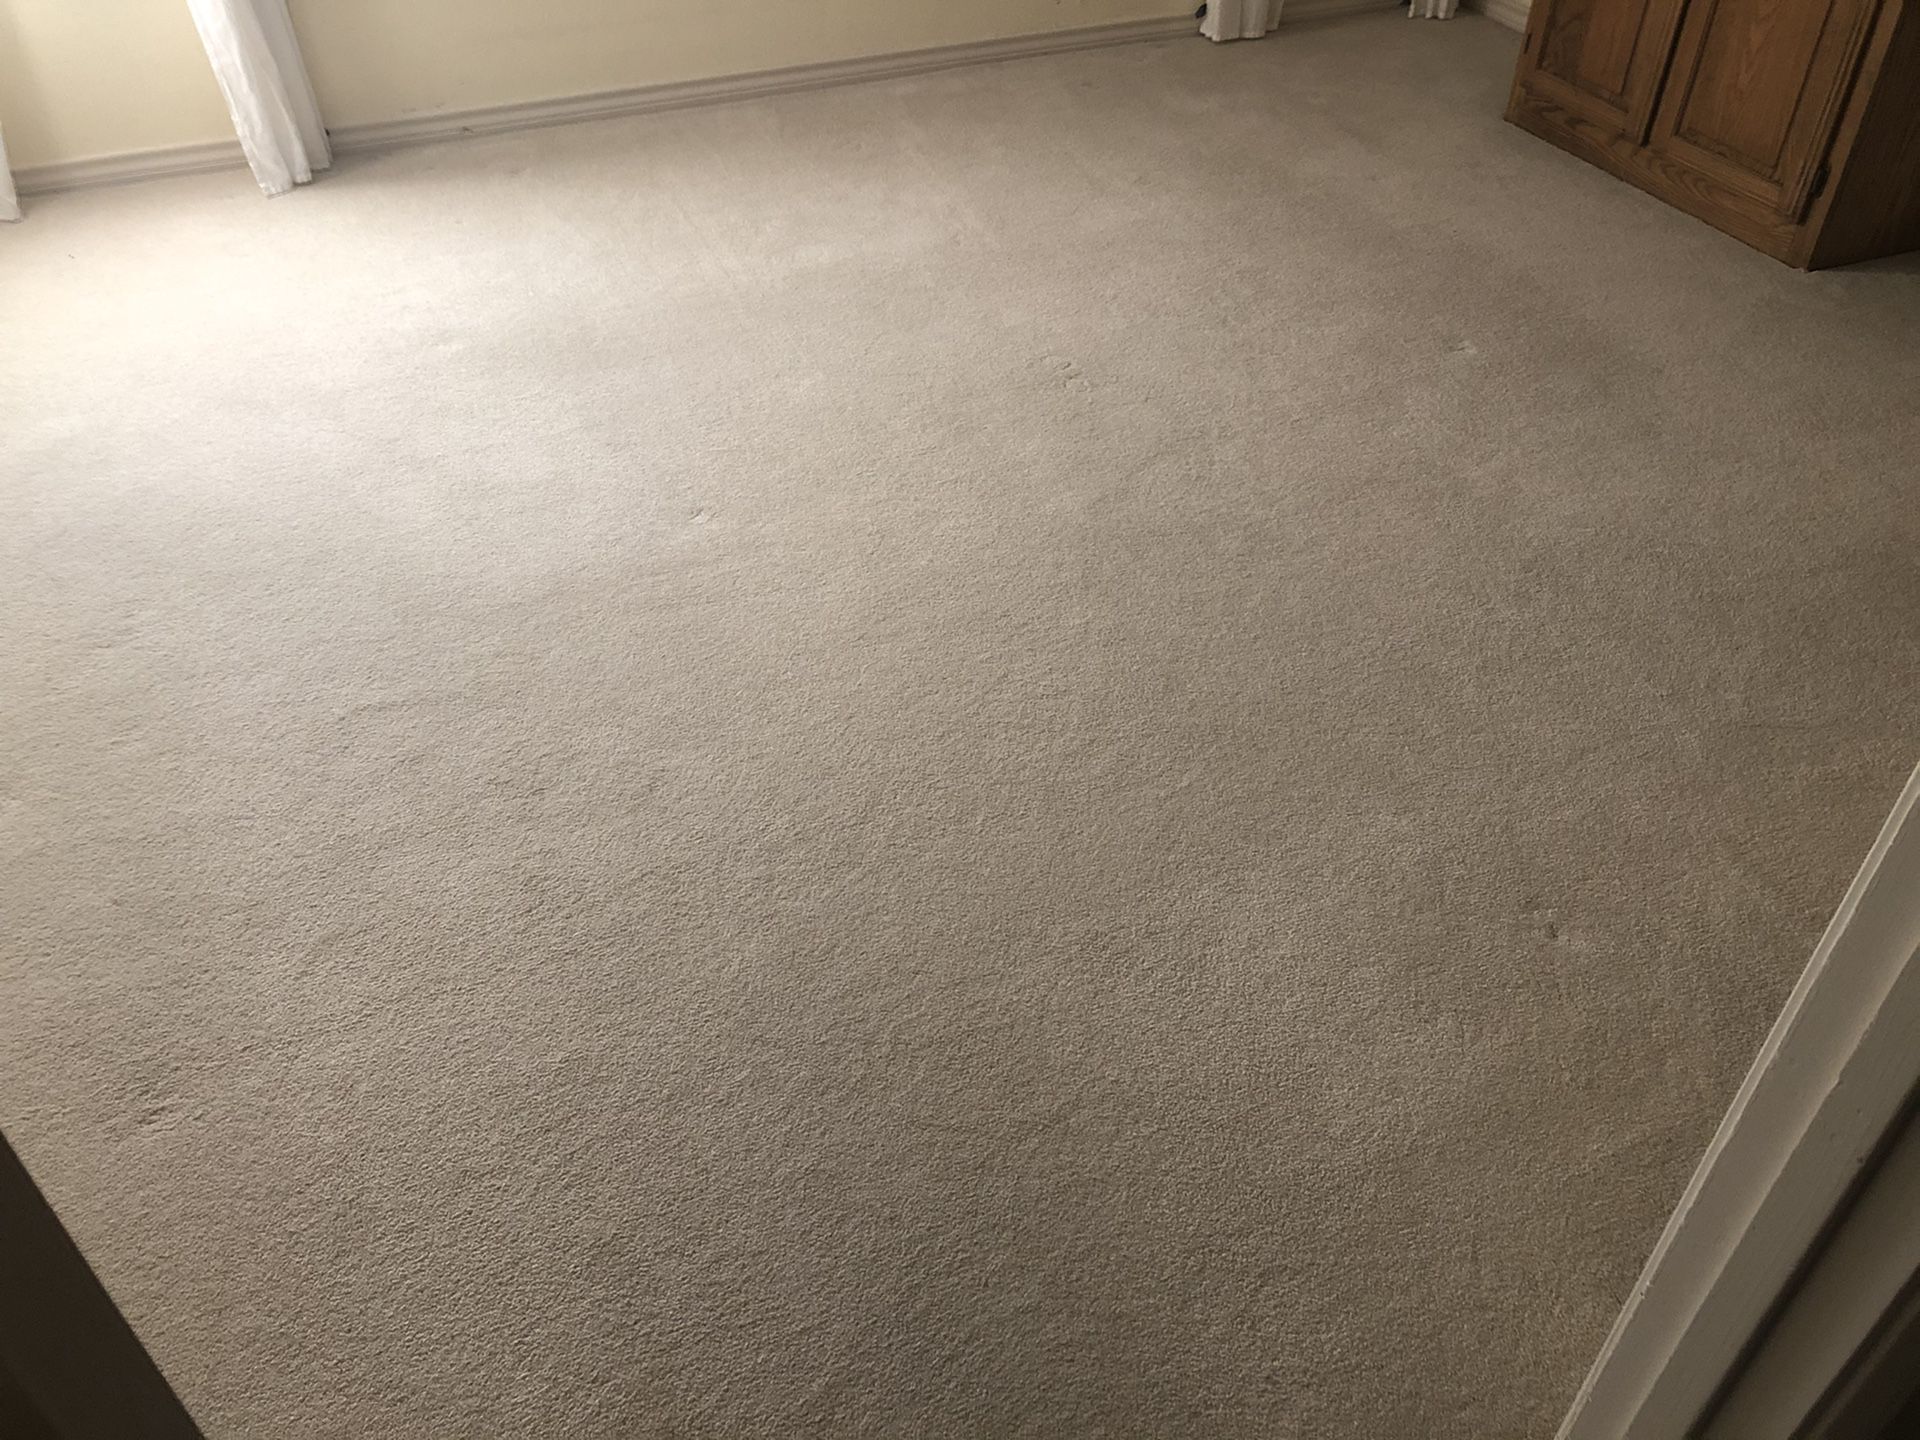 White light-colored plush carpet